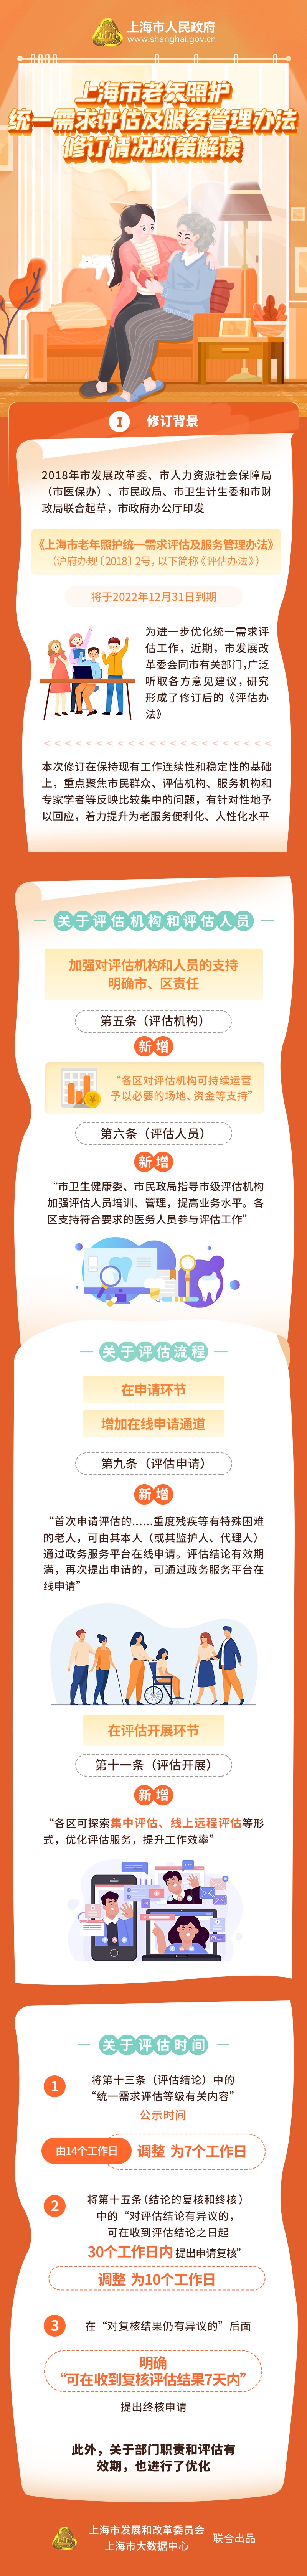 《上海市老年照护统一需求评估及服务管理办法》修订情况解读.jpg